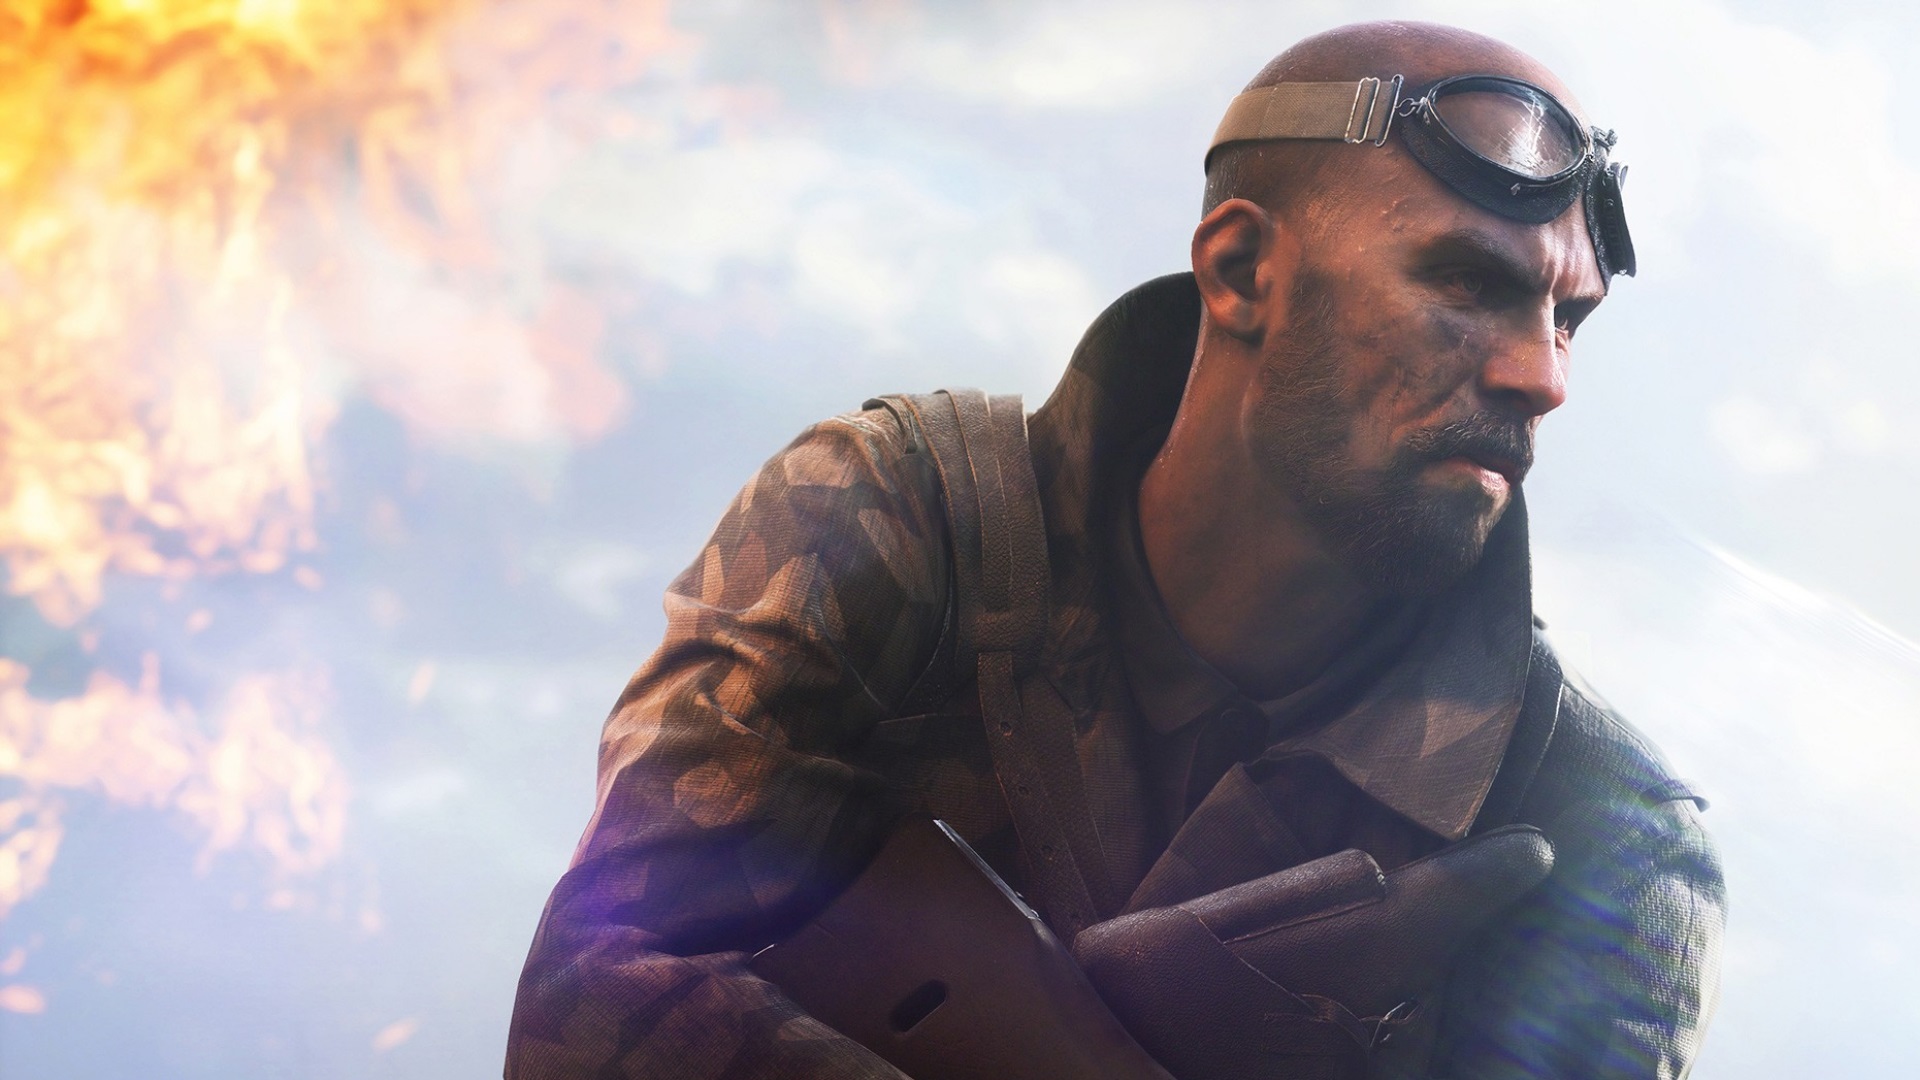 Bästa krigsspel: Battlefield 5. Bilden visar en försiktig soldat med en pistol